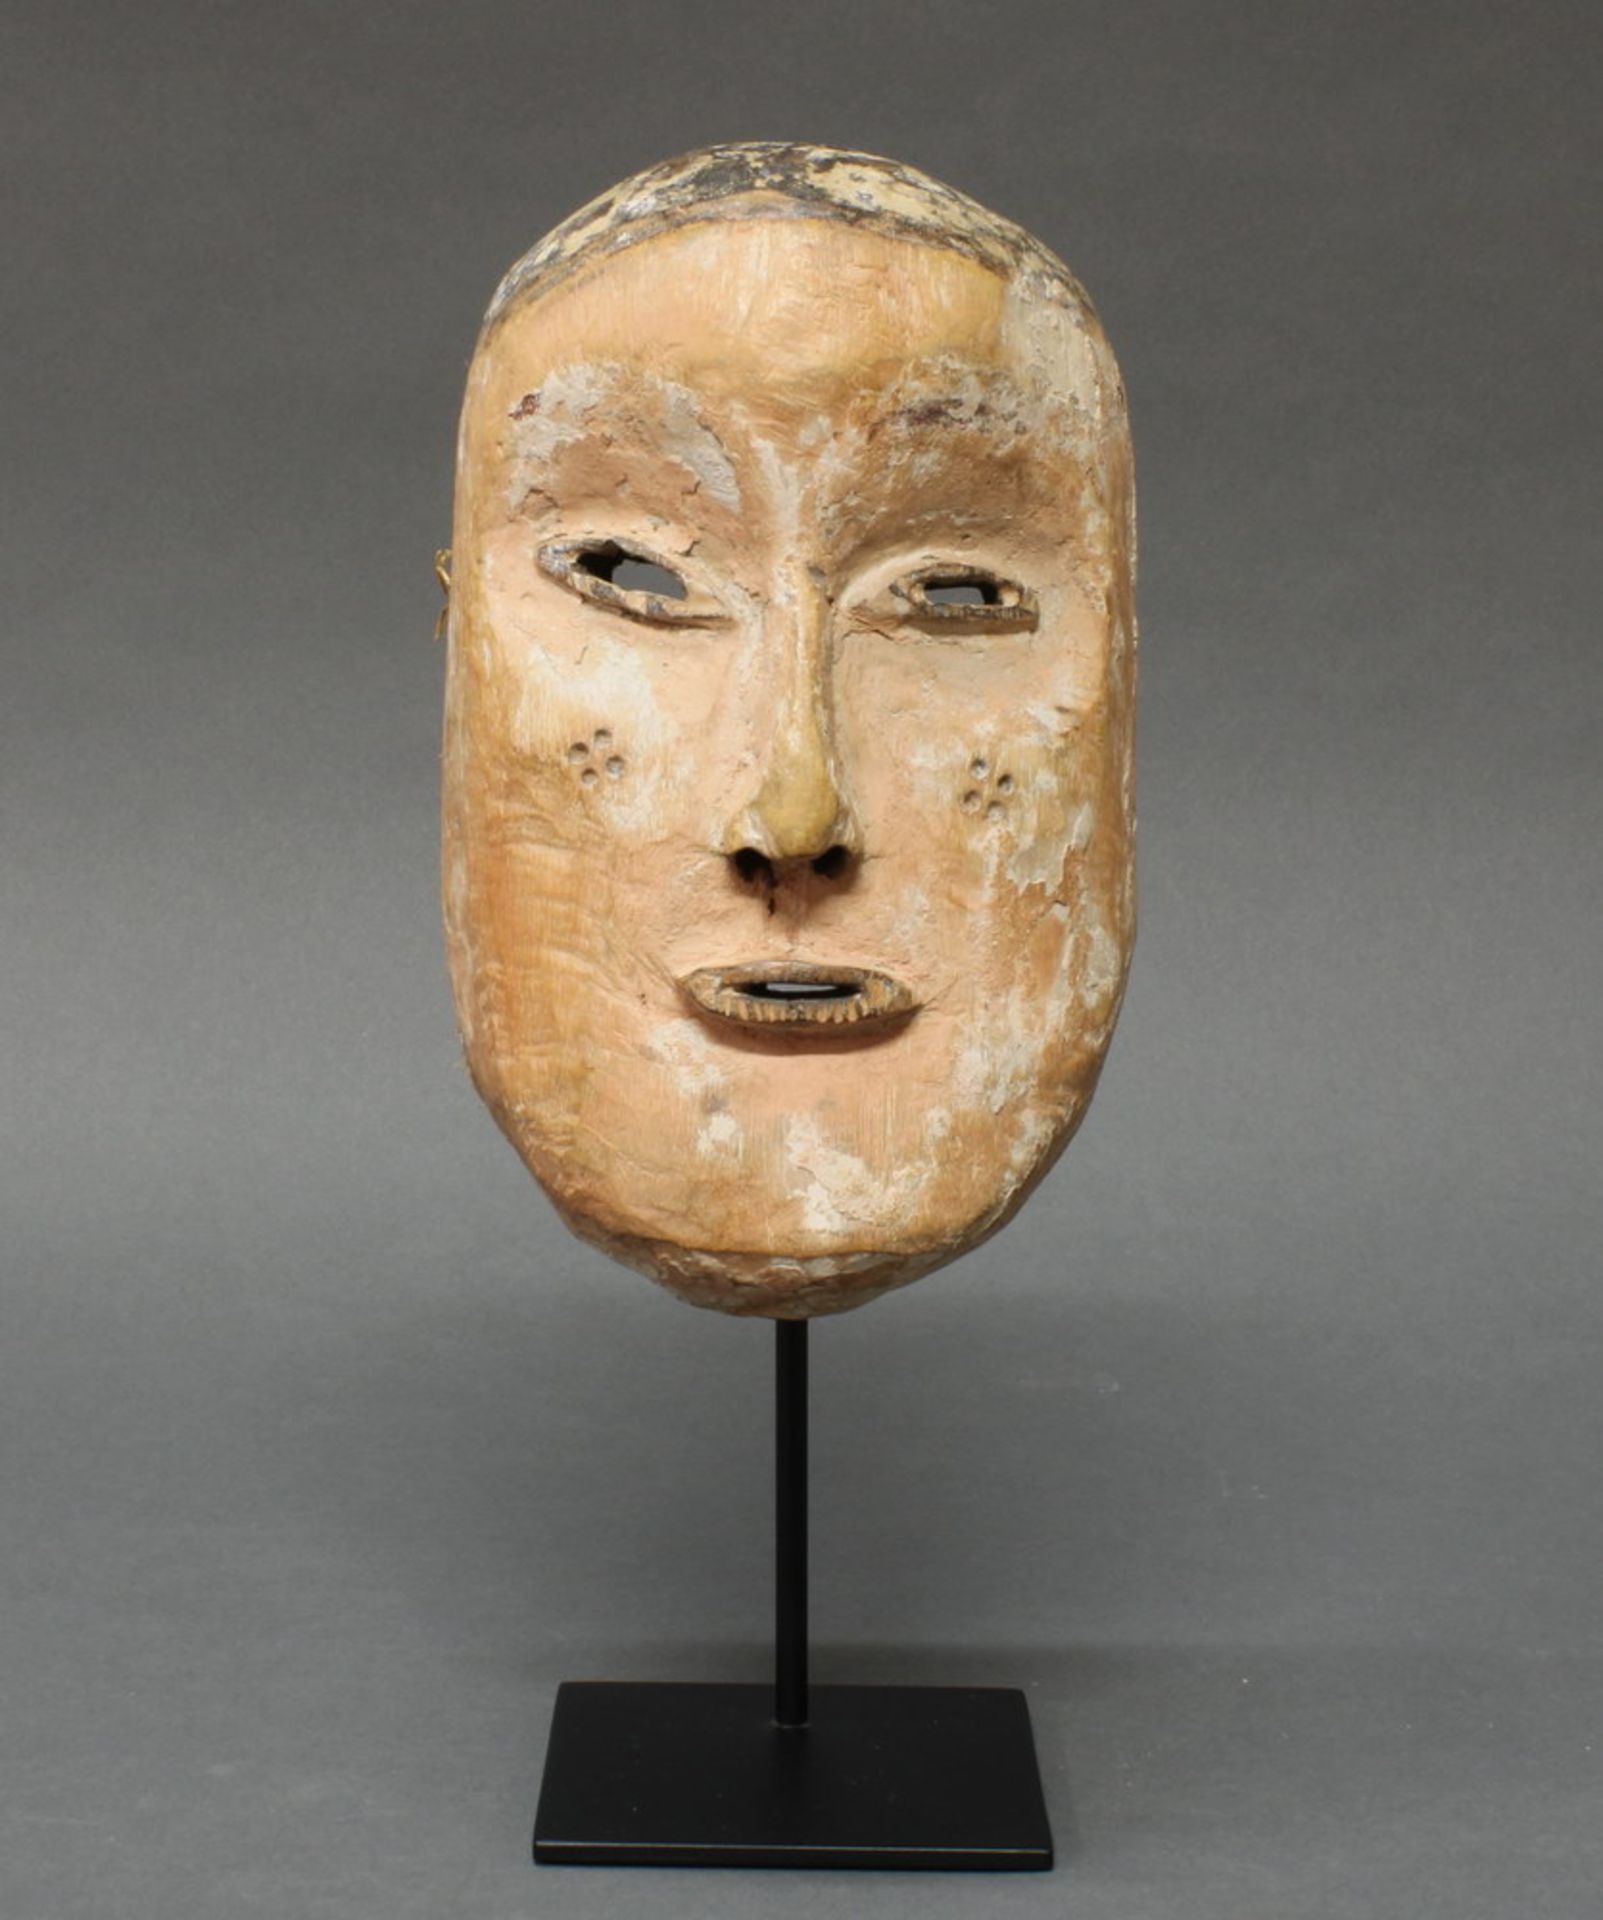 Maske, Tschokwe, D.R. Kongo, Afrika, Holz, Gesichtsfeld mit weißem und hautfarbenem Pigment